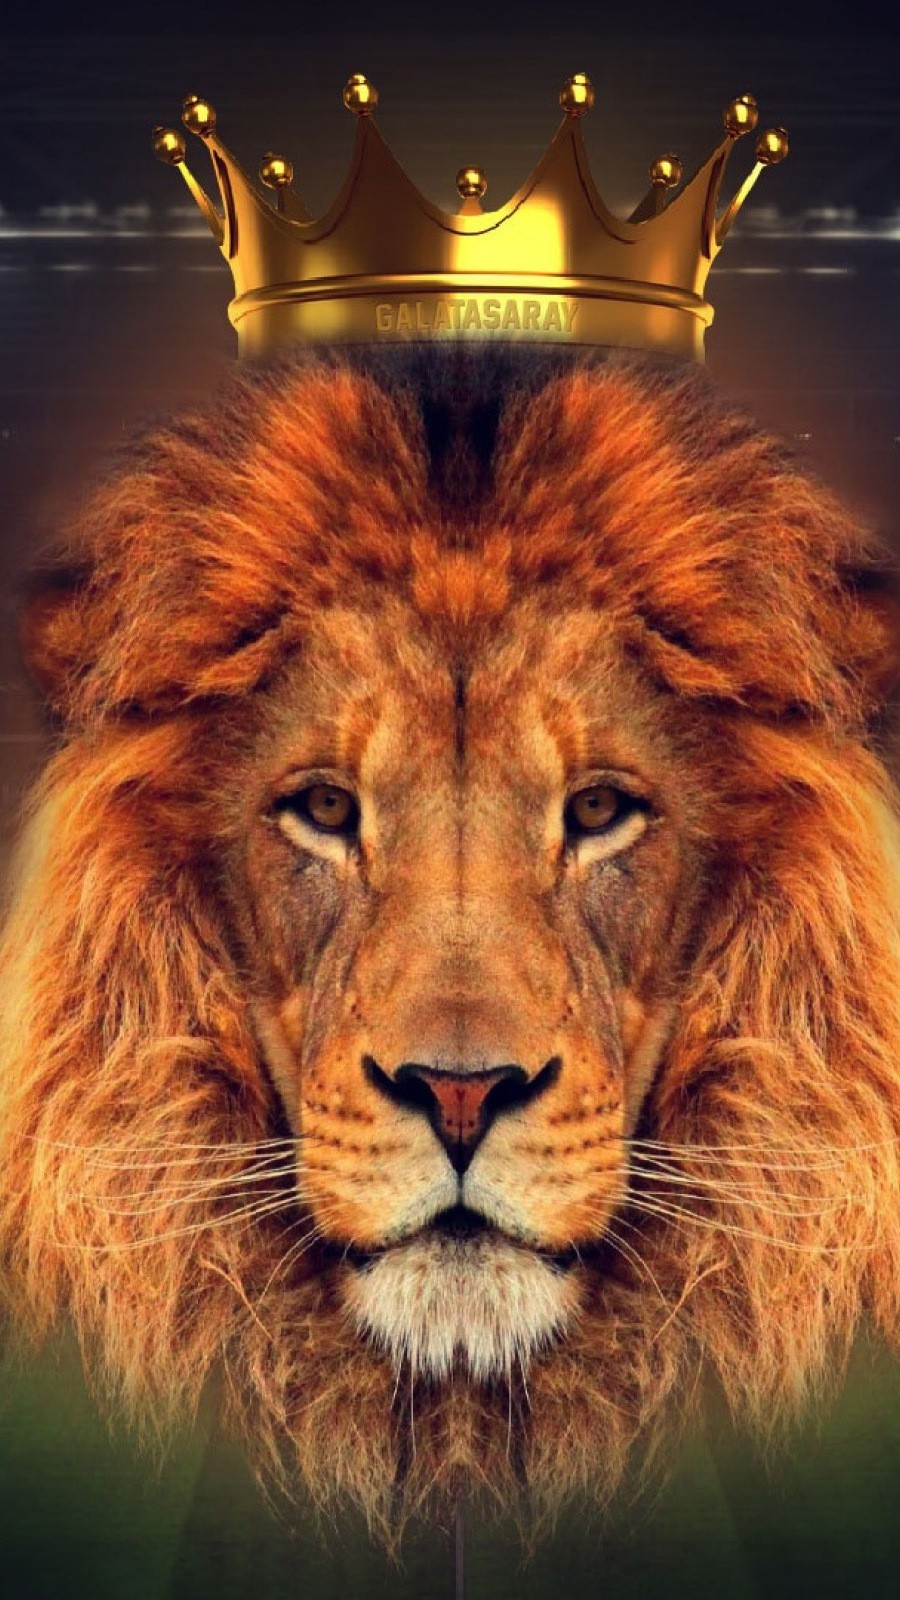 Free Download Lion King Crown Animals Wallpaper